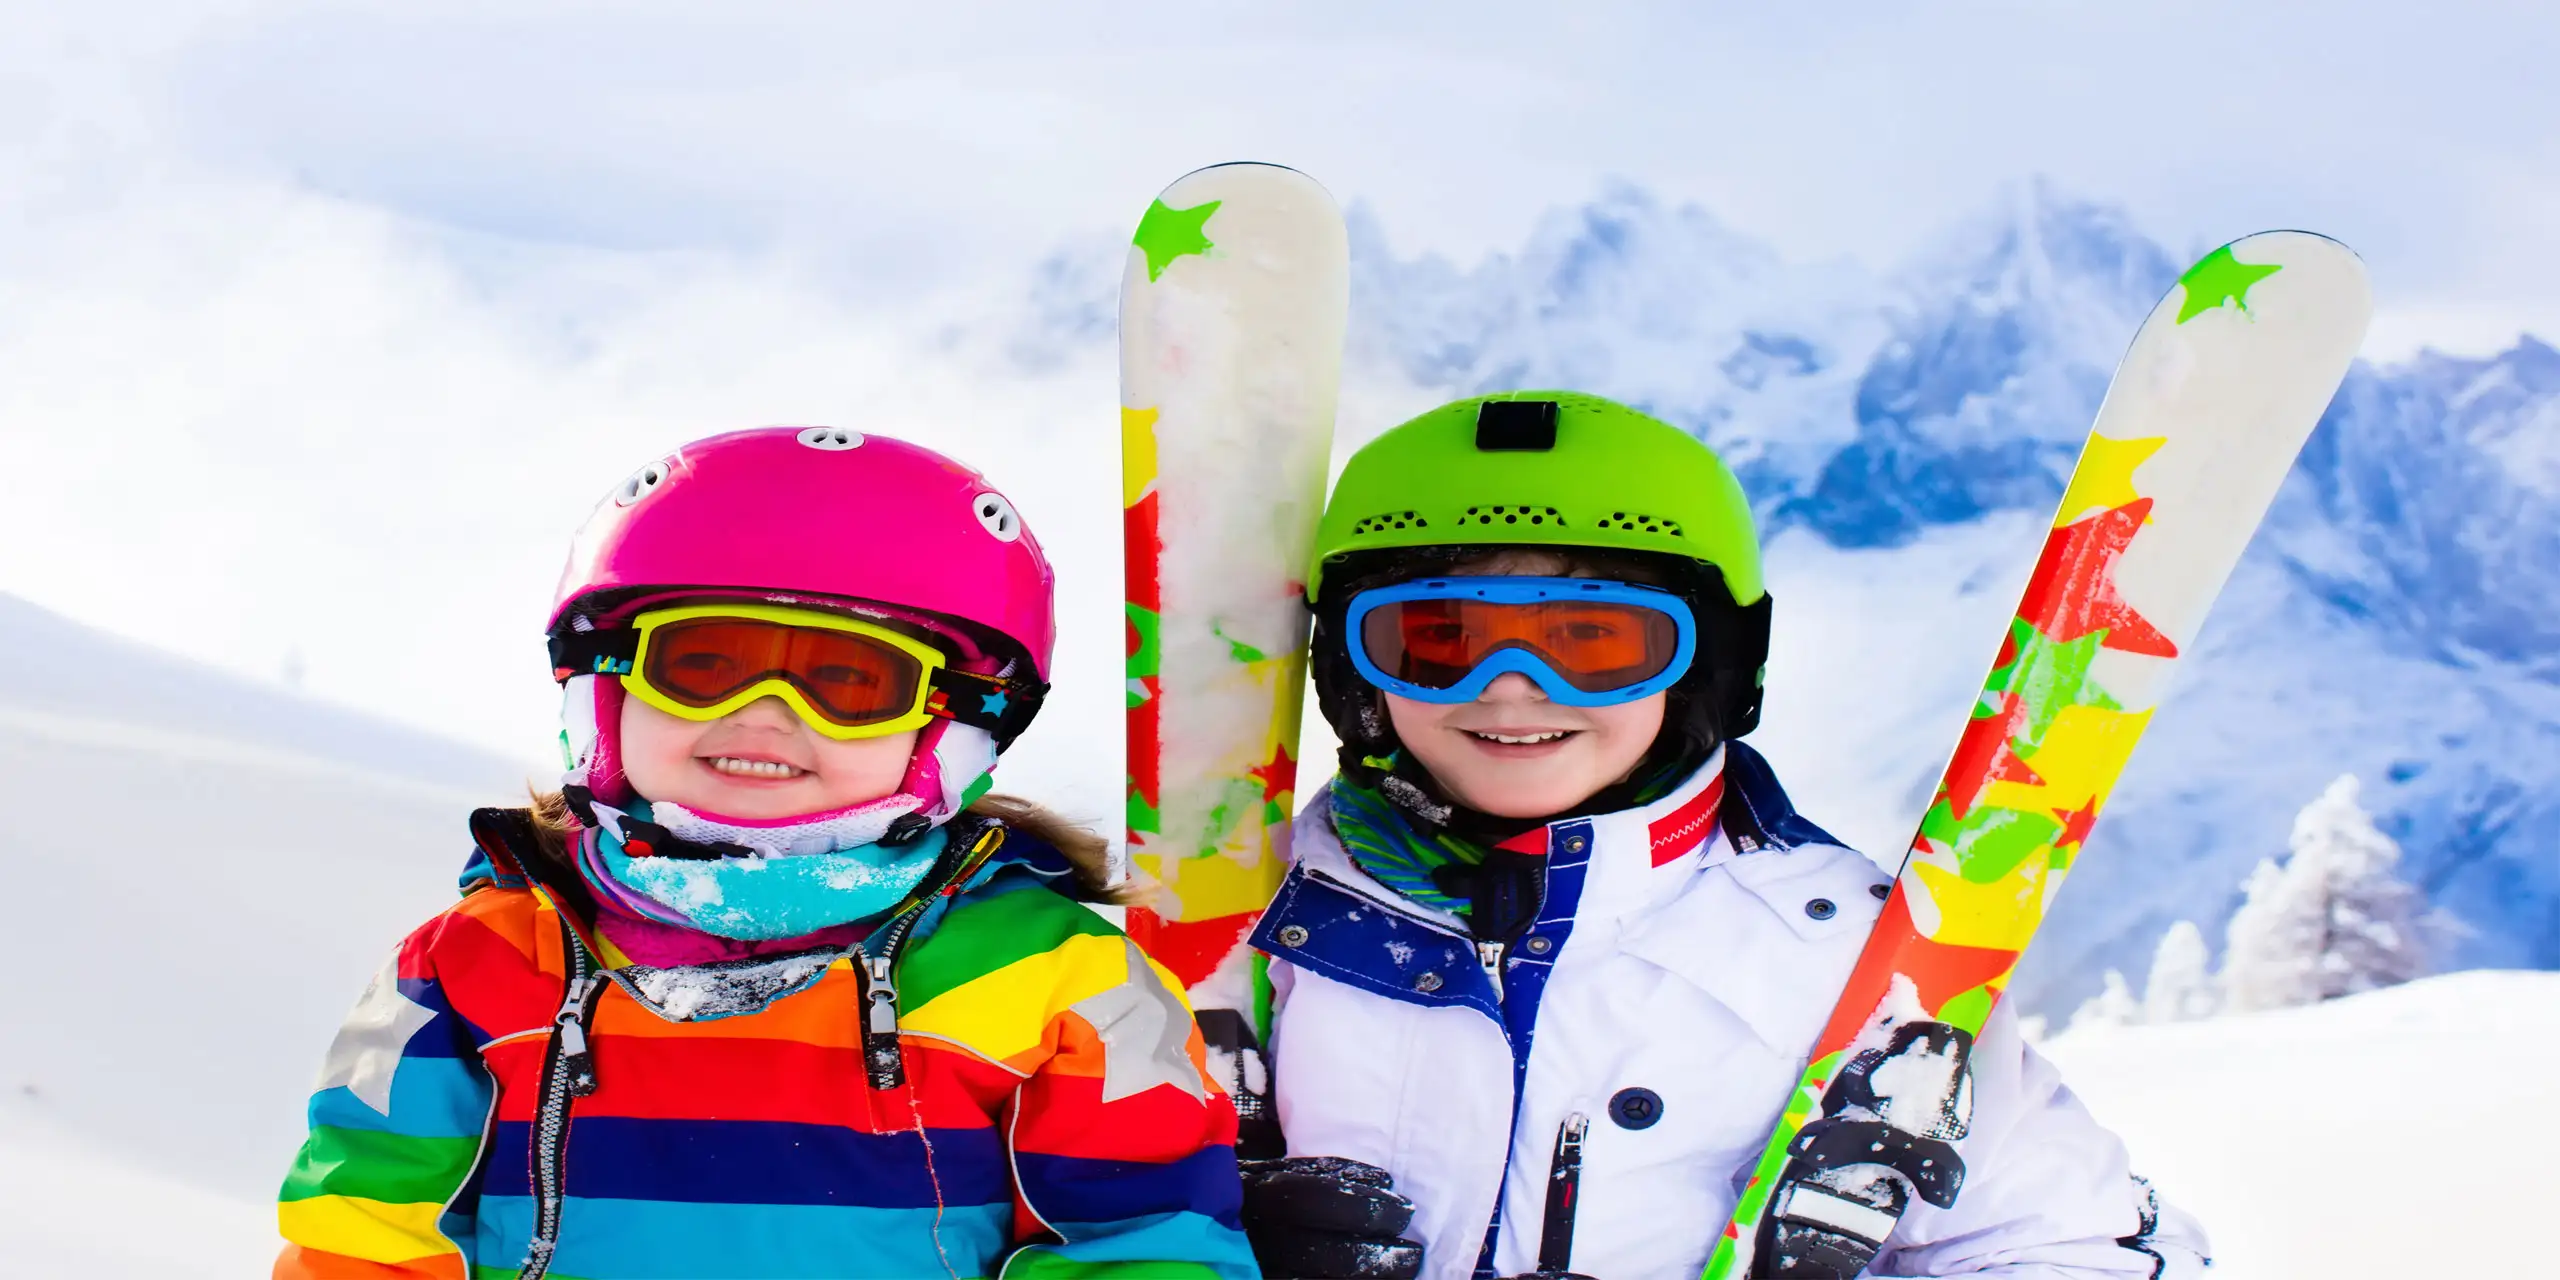 Kids Skiing; Courtesy of Fam Veld/Shutterstock.com